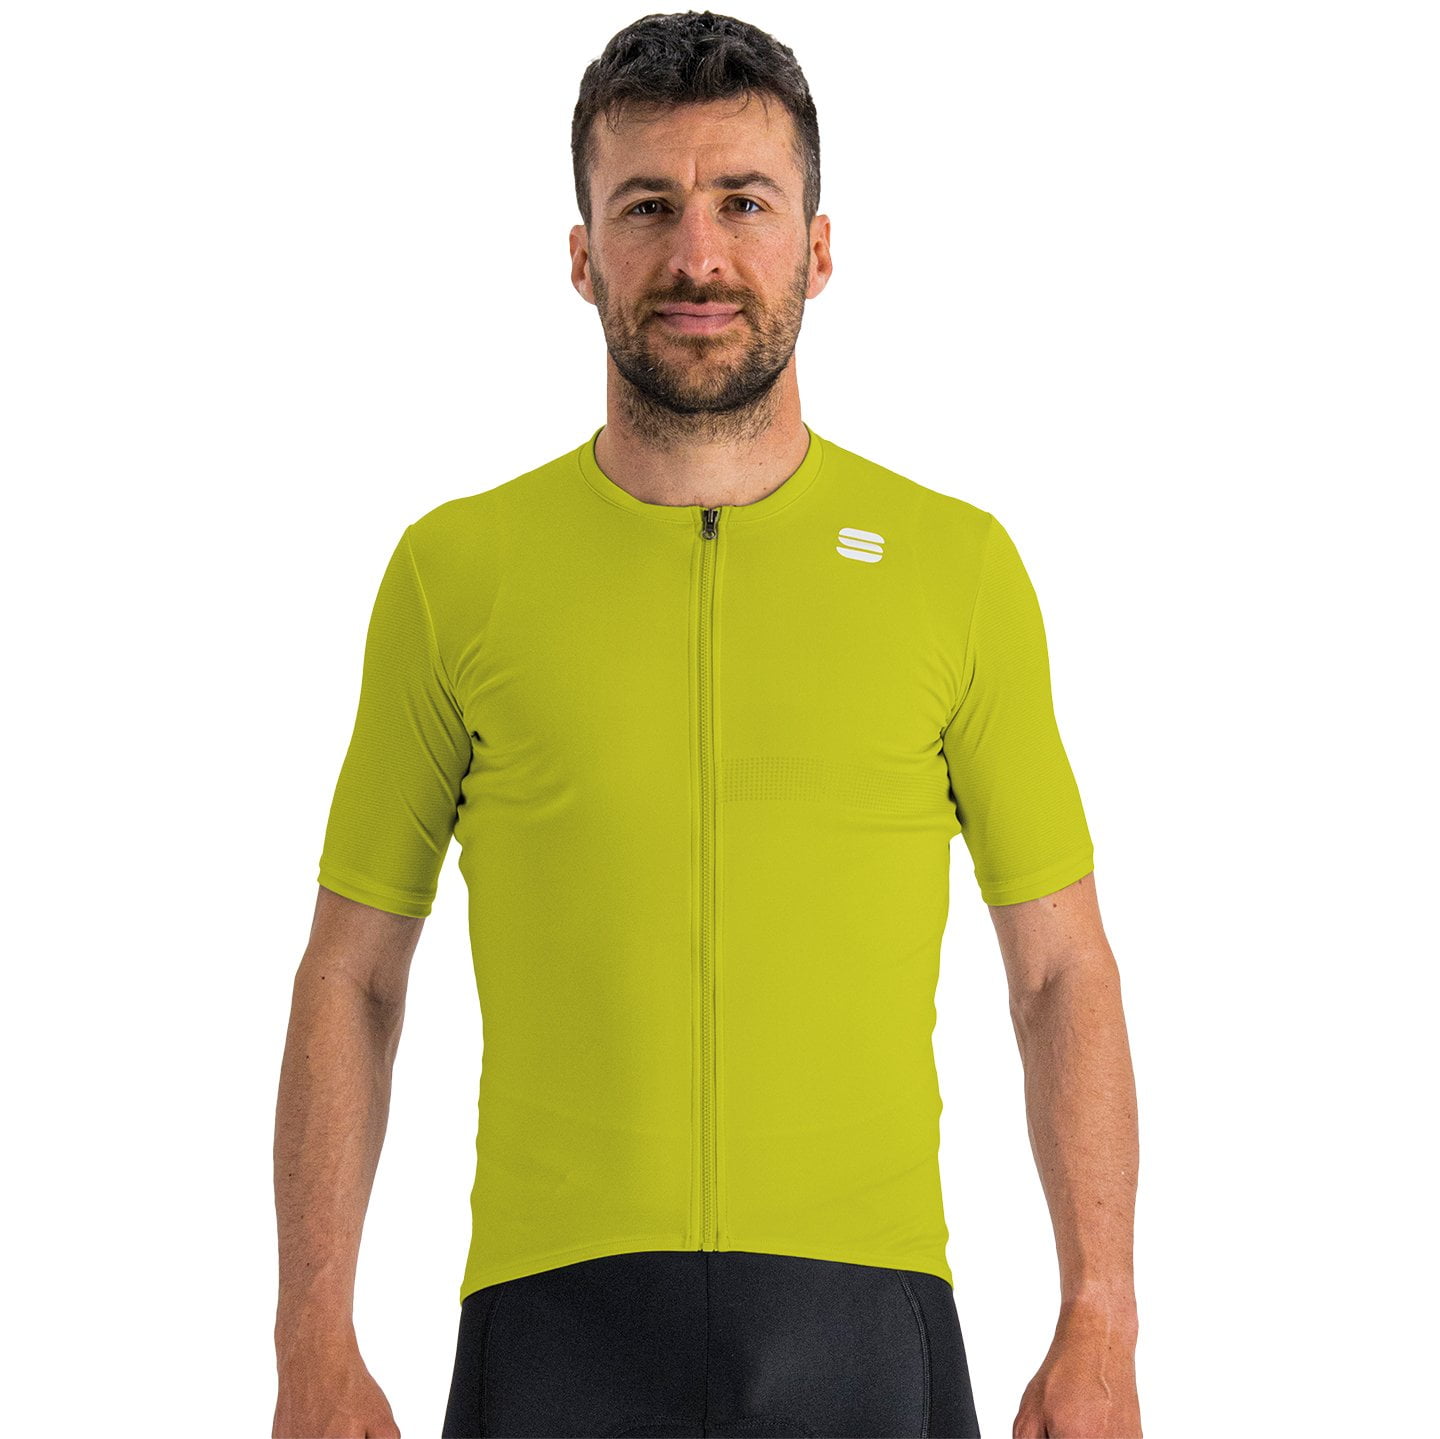 SPORTFUL Matchy Short Sleeve Jersey Short Sleeve Jersey, for men, size L, Cycling jersey, Cycling clothing